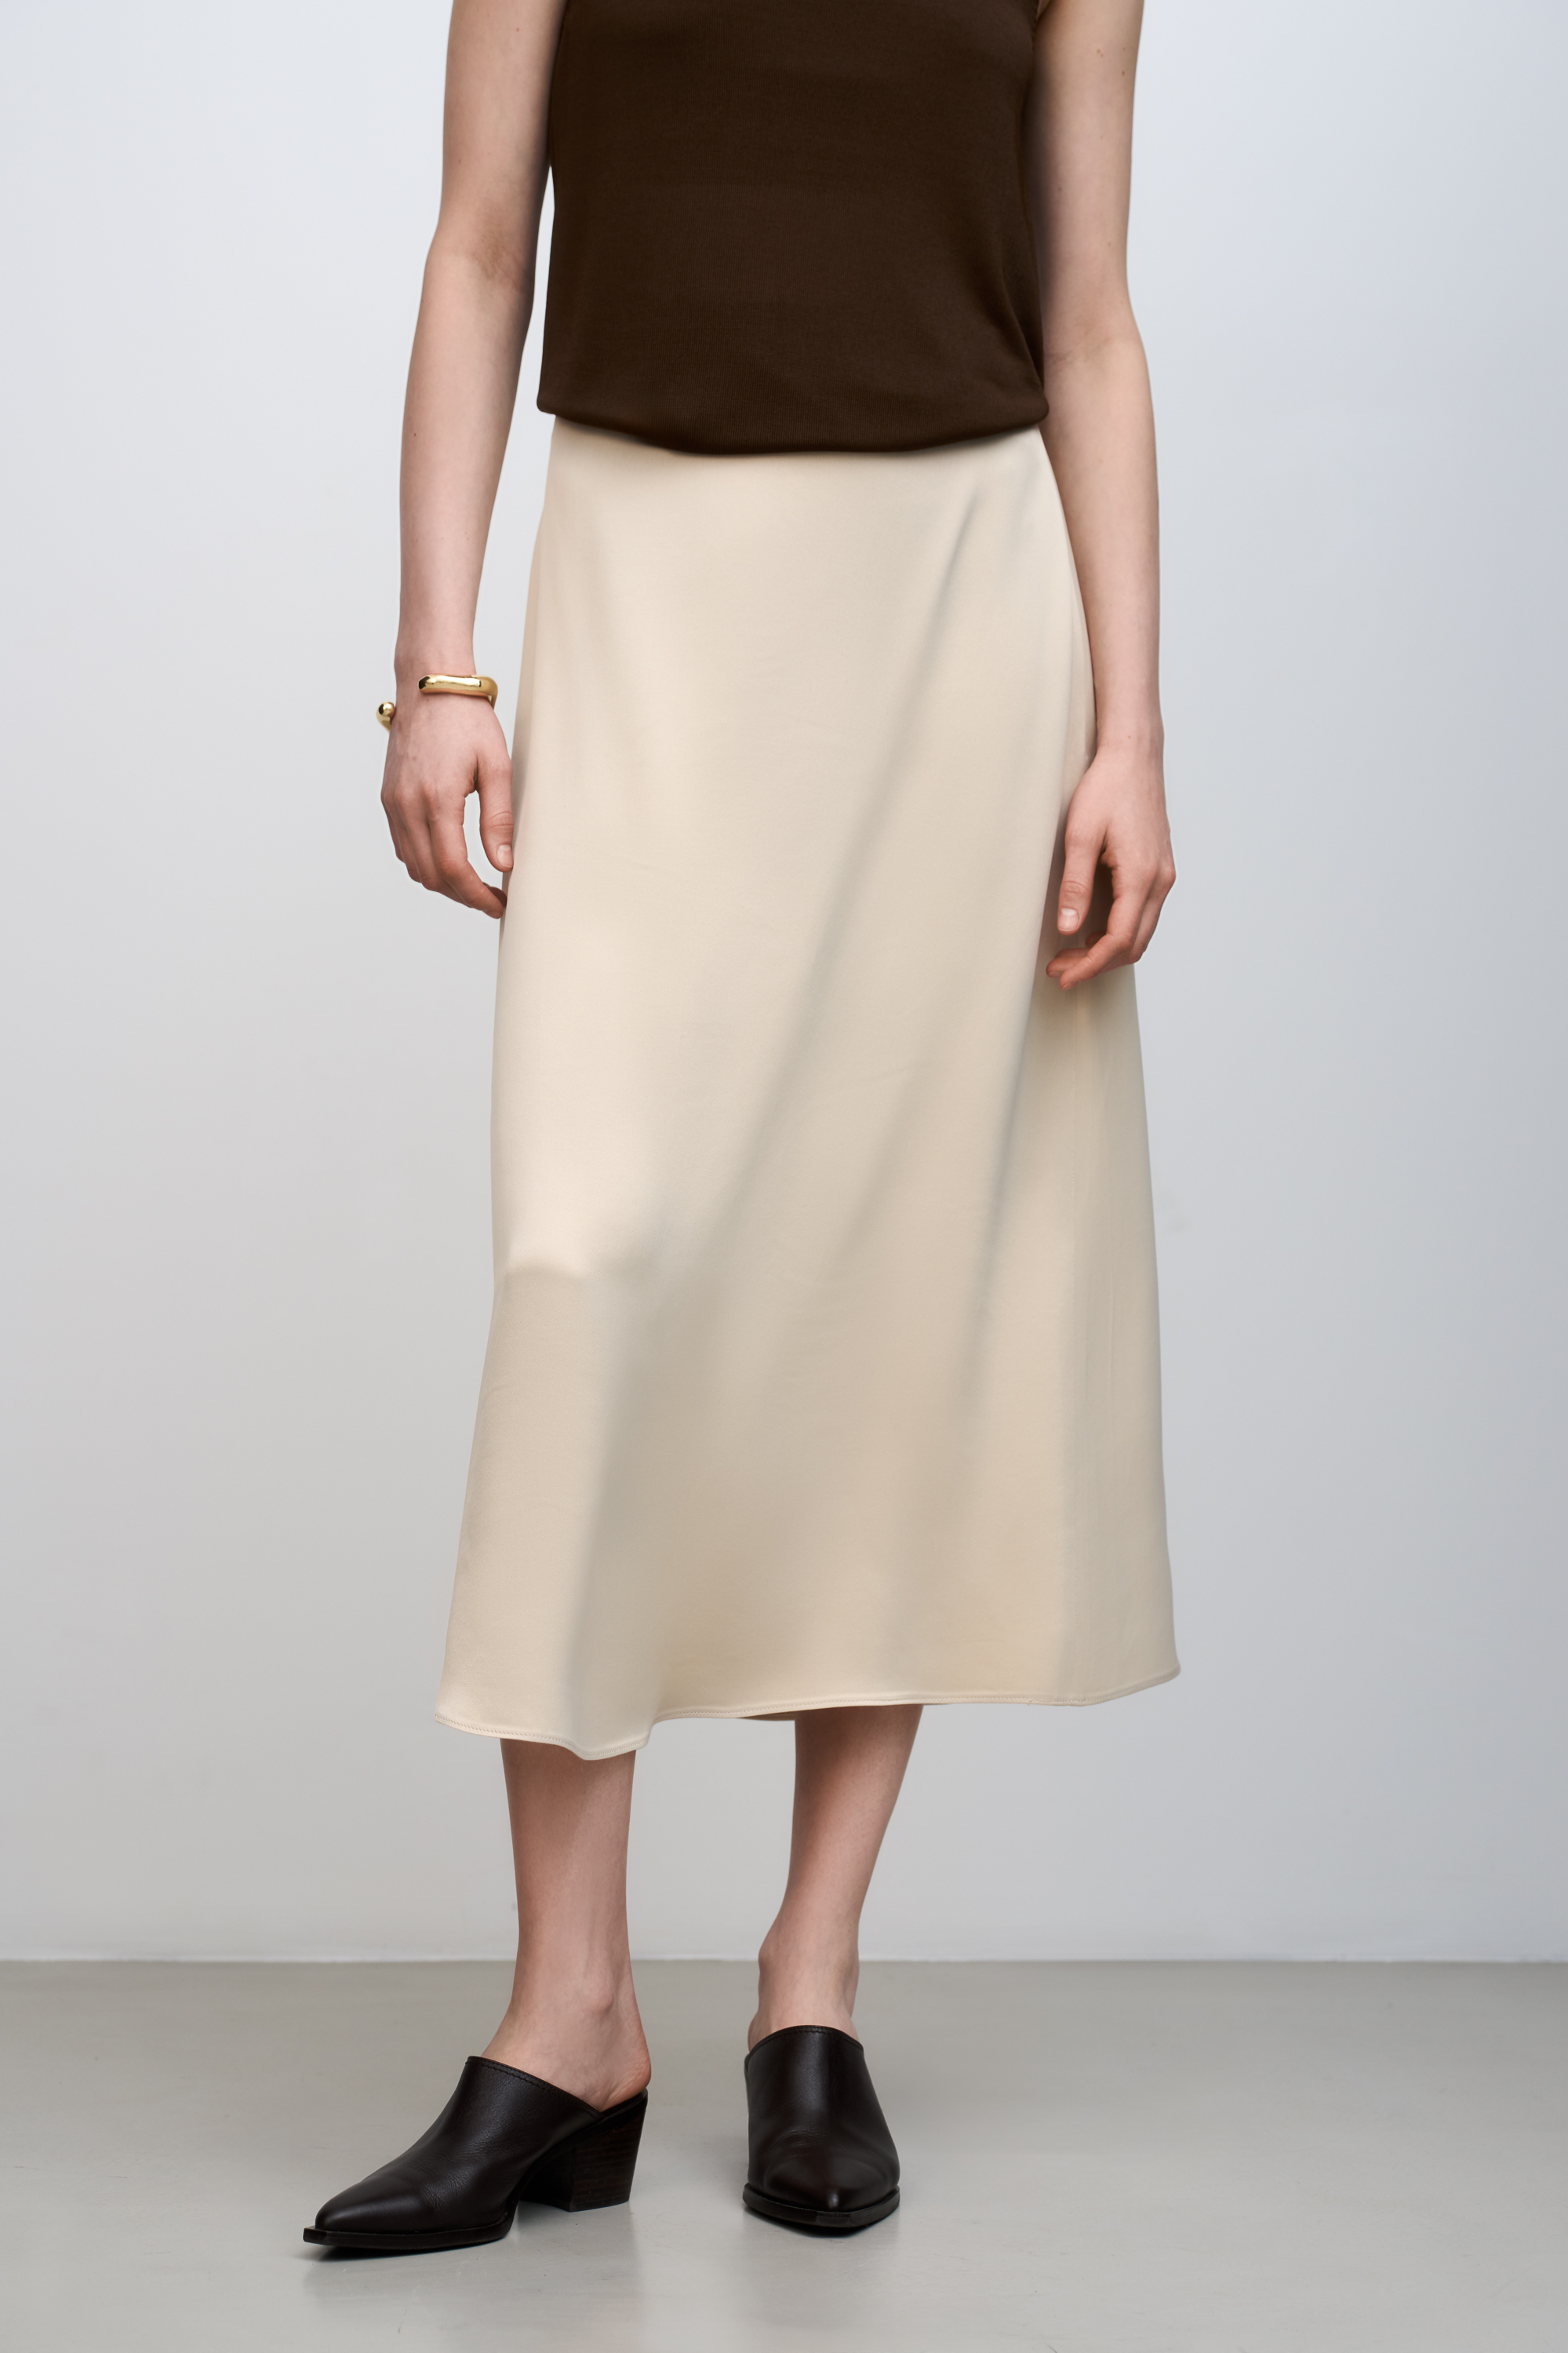 Skirt 3723-09 Ivory from BRUSNiKA